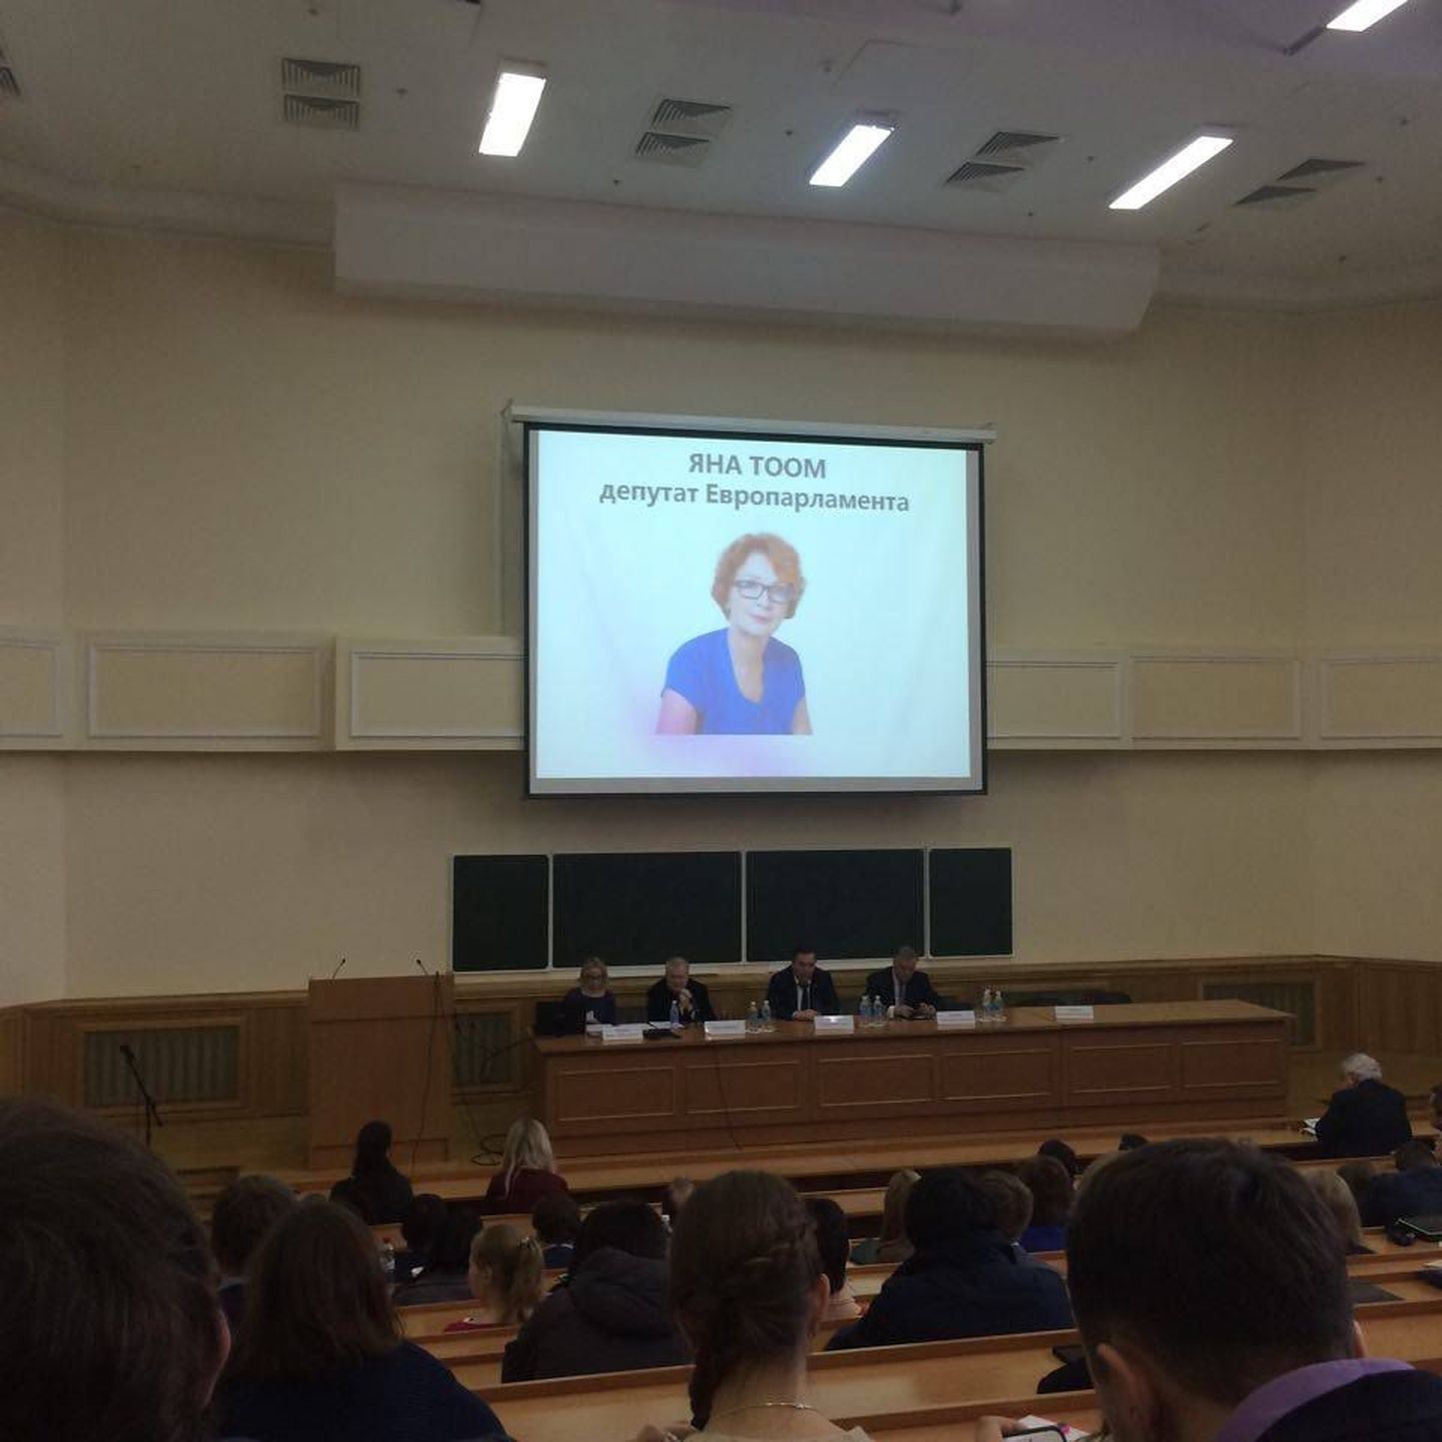 Savisaar Moskva ülikoolis loengut pidamas. Fotod saatis ülikooli tudeng.